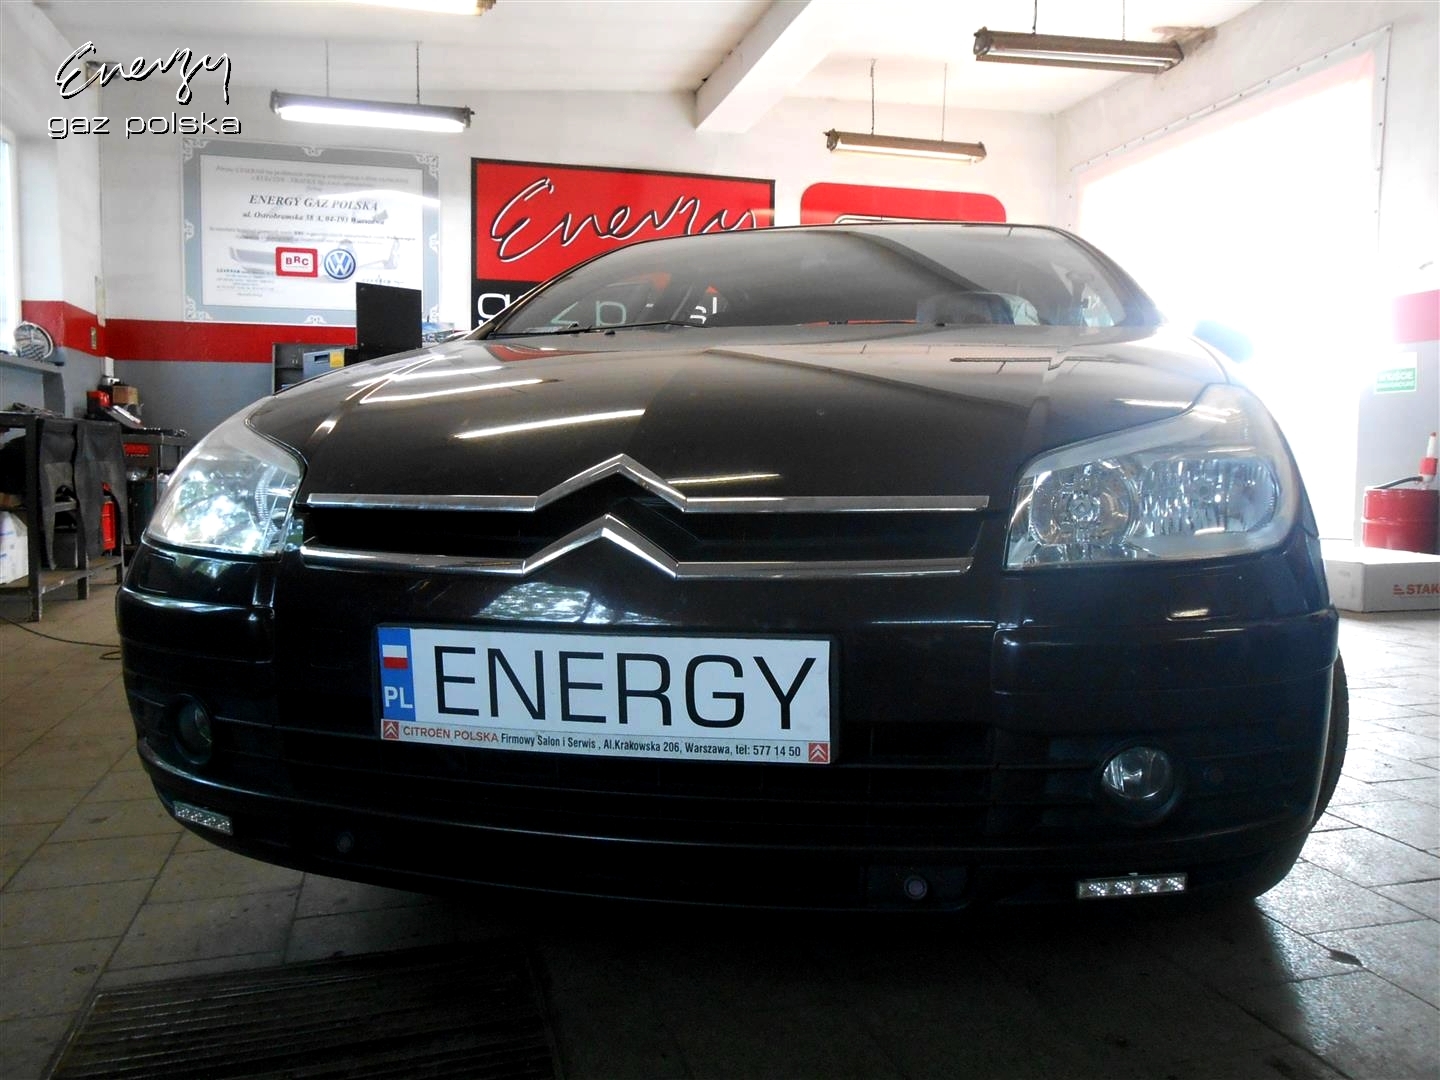 Galeria Lpg - Citroen C5 1.8 2007R - Energy Gaz Polska - Montaż Auto Gaz